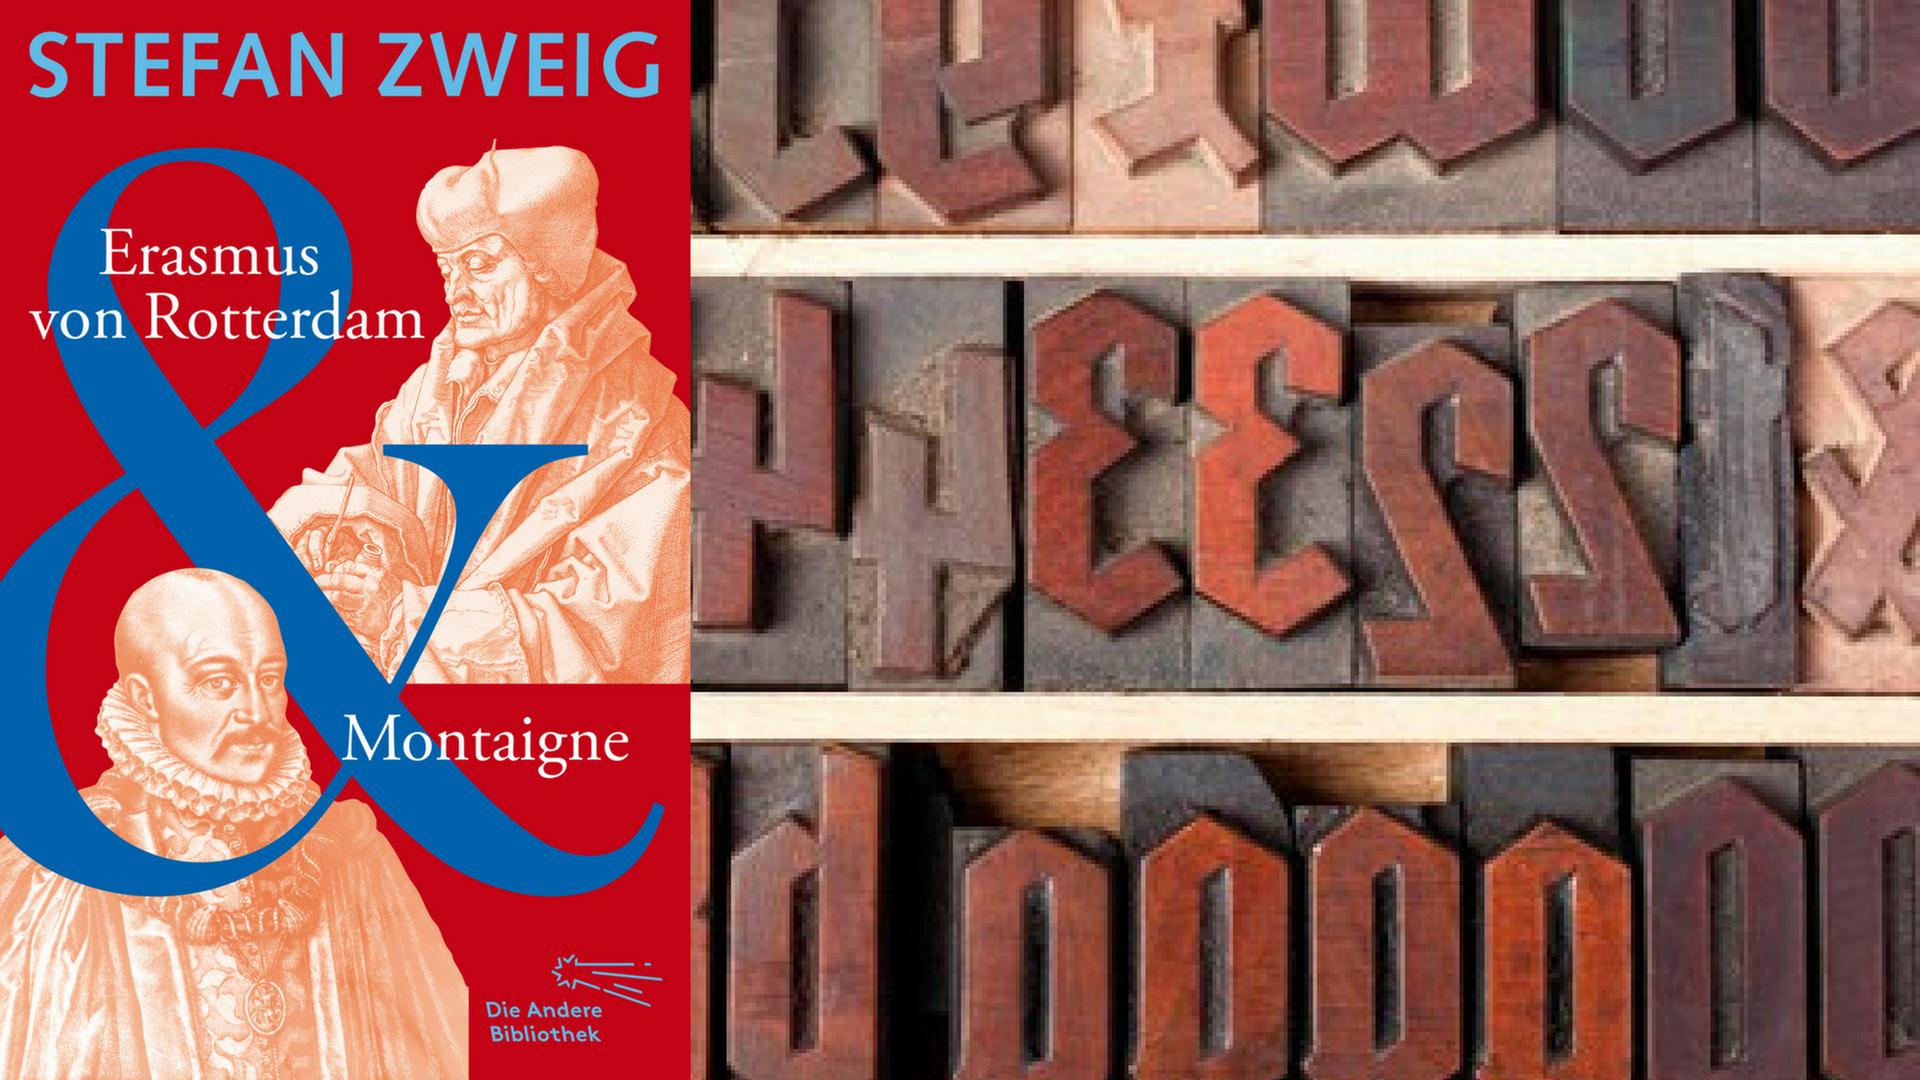 Buchcover: Stefan Zweig: "Erasmus von Rotterdam und Montaigne"